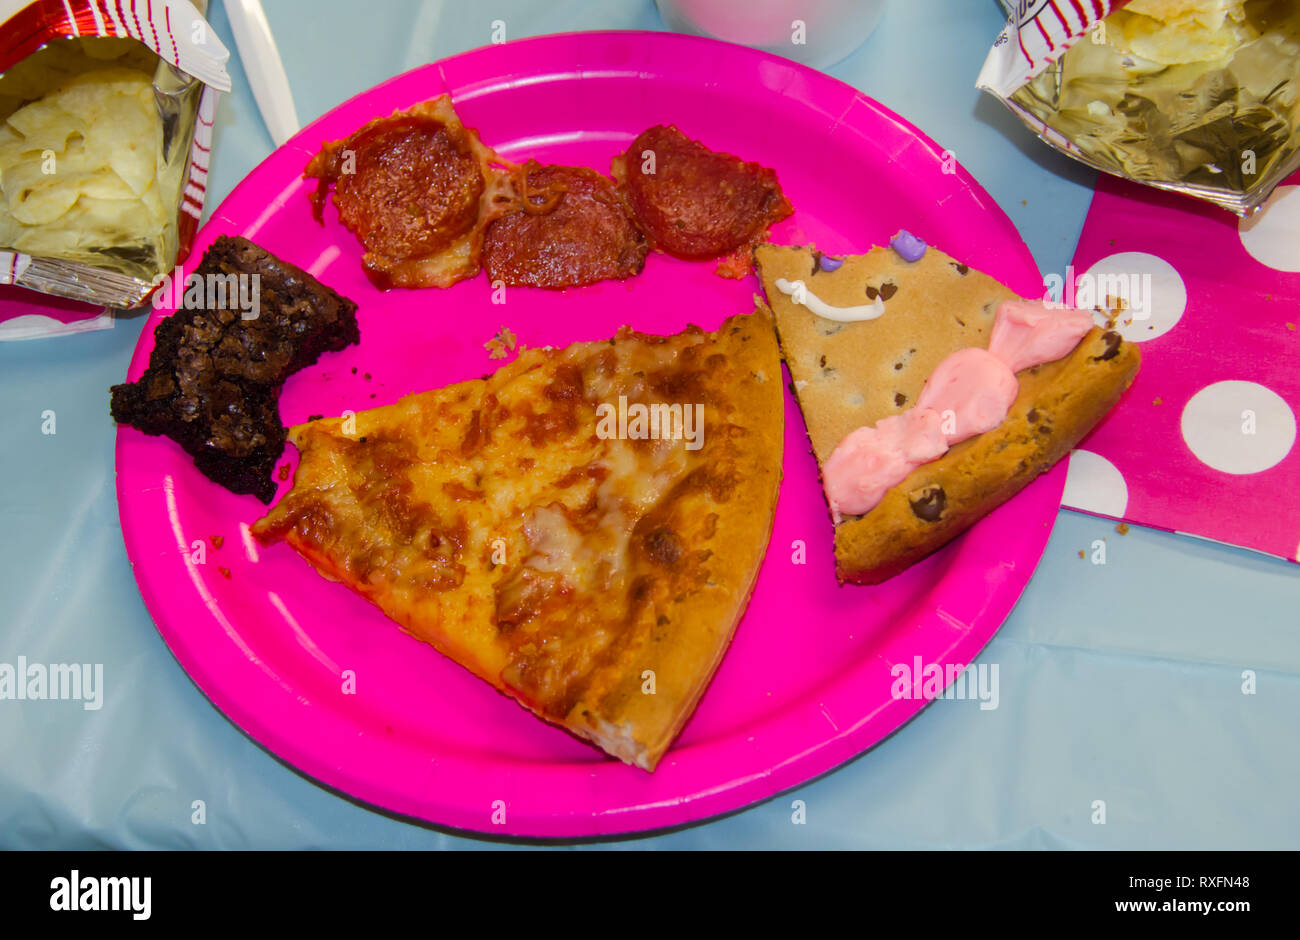 Anniversaire de la nourriture avec un morceau pris dans un assortiment de gâteries dont des pizzas, chips, gâteaux et biscuits brownies. Banque D'Images